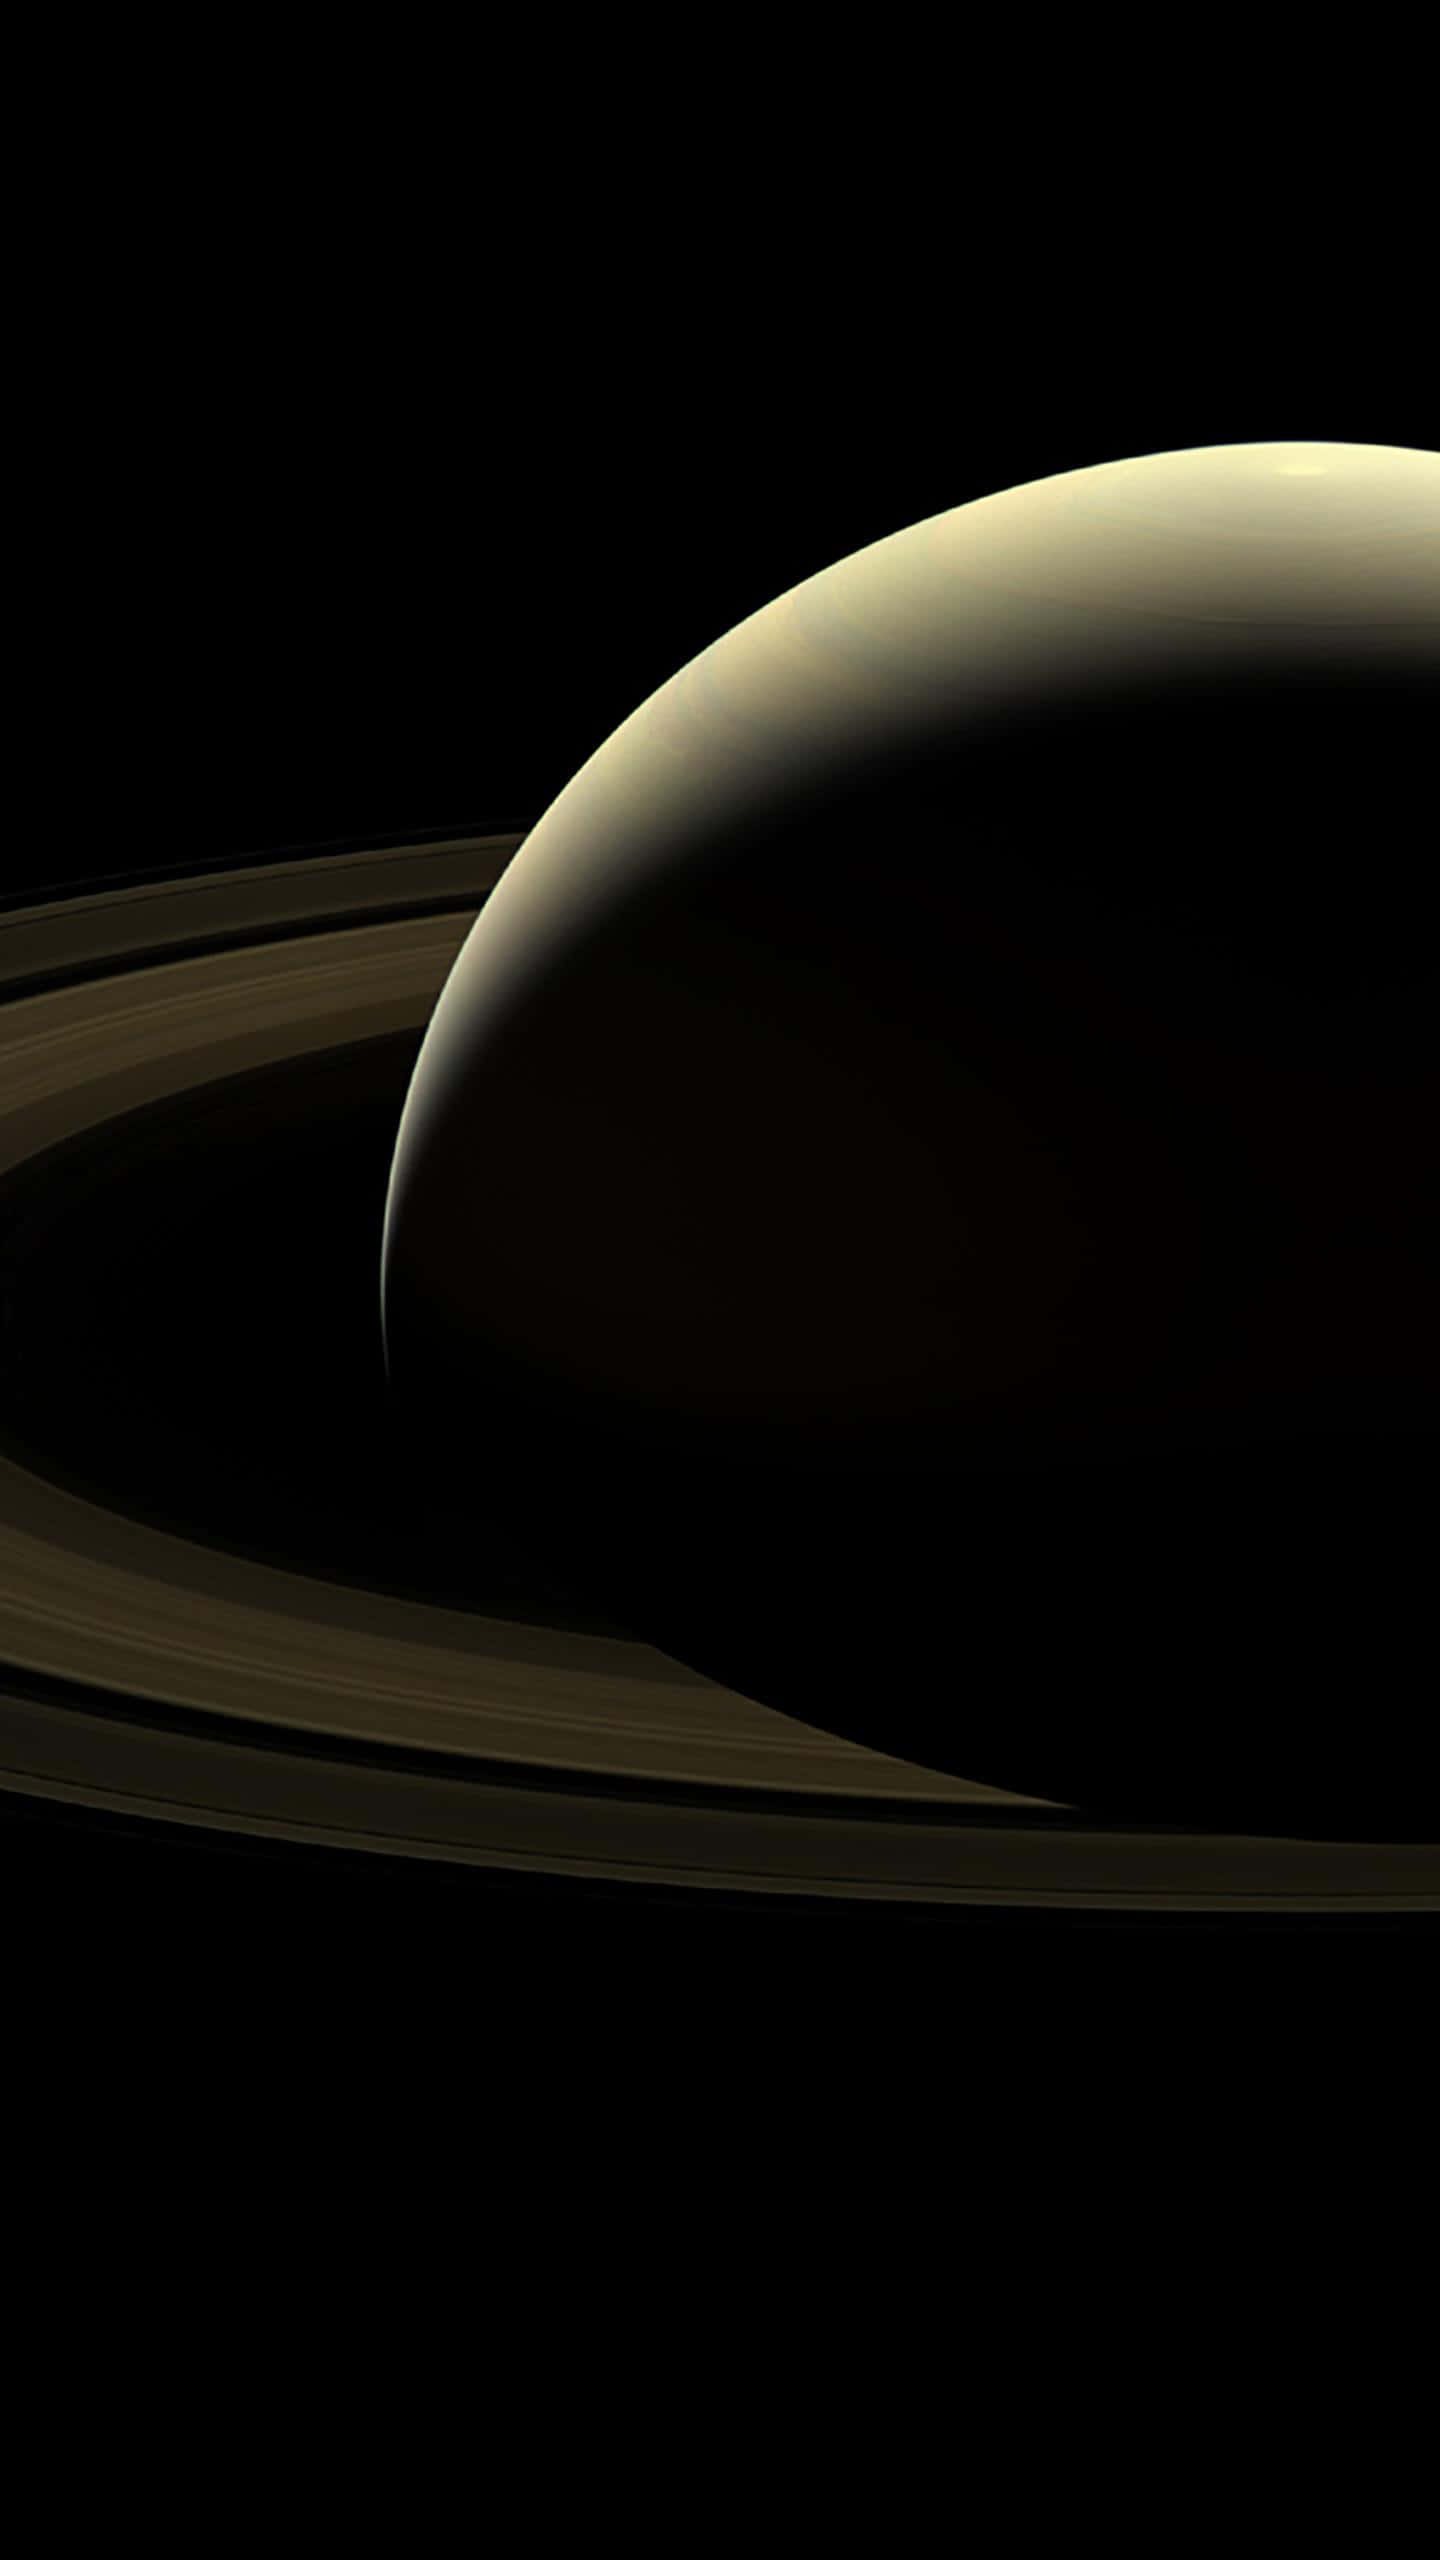 Dieringe Des Saturns Sind Auf Diesem Bild Zu Sehen.